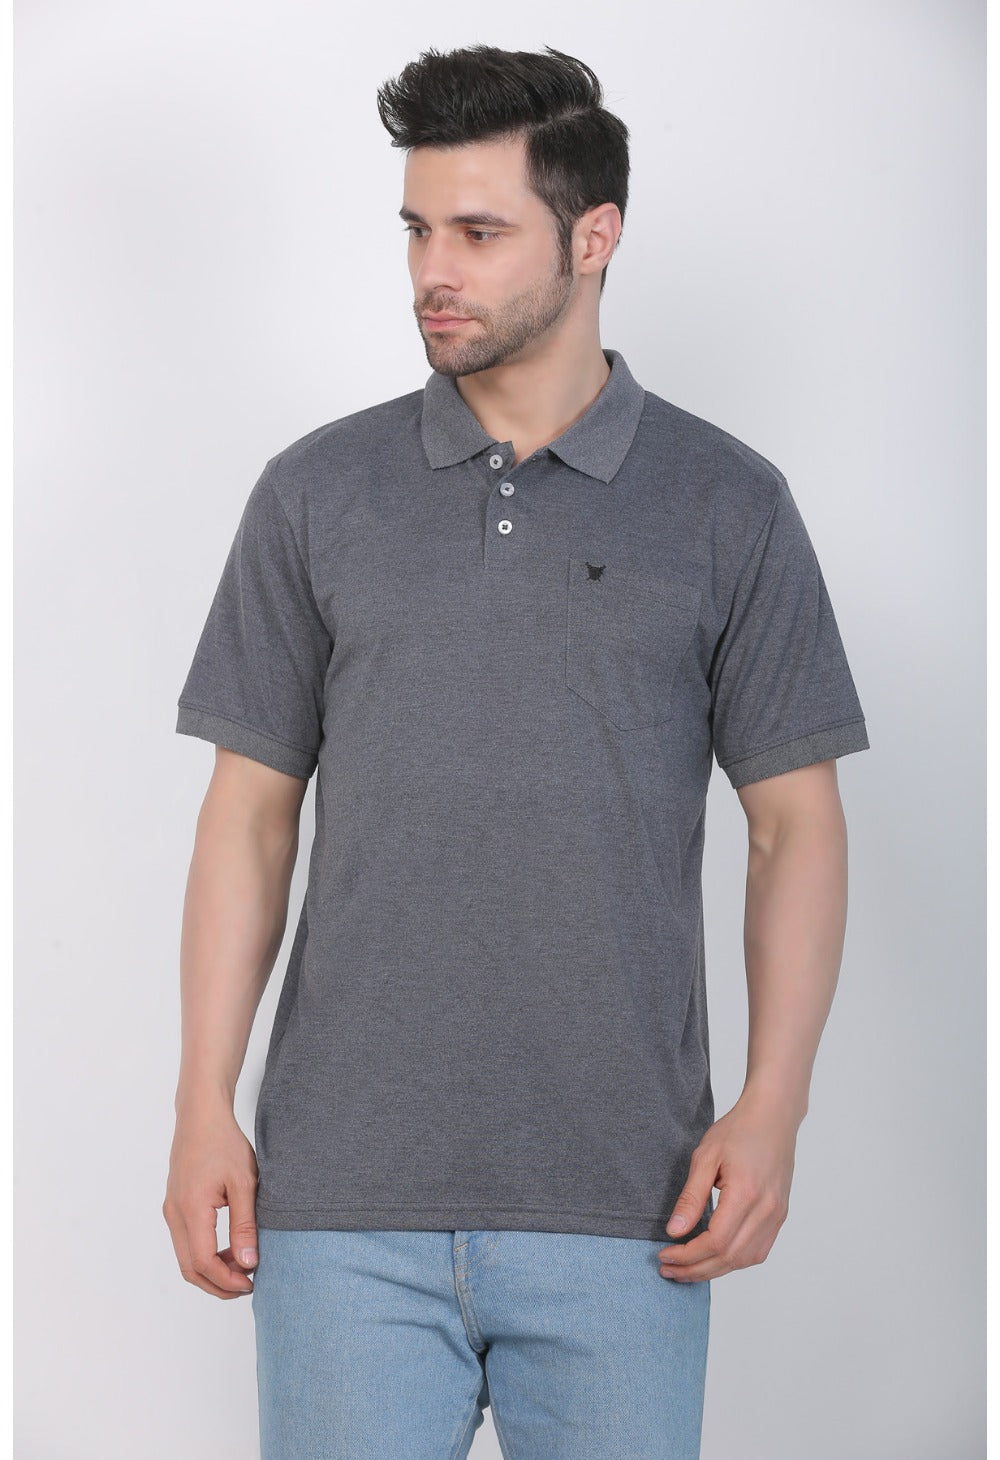 Men's Poly Viscose Polo Plain Tshirt (Charcoal Melange) - GillKart